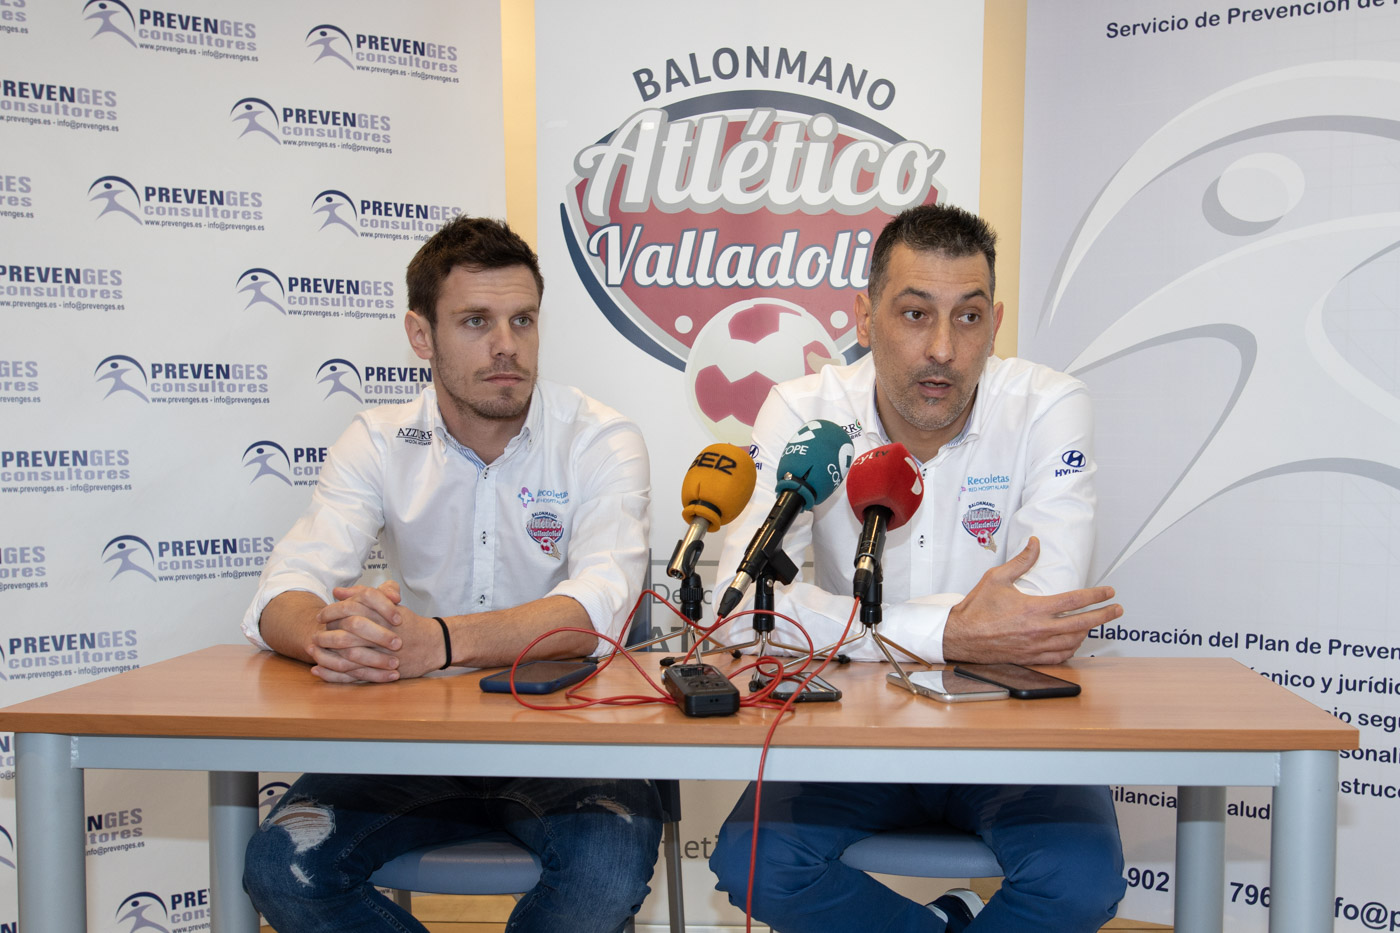 Prevenges Consultores se suma al proyecto del Recoletas Atlético Valladolid | Galería 1 / 2